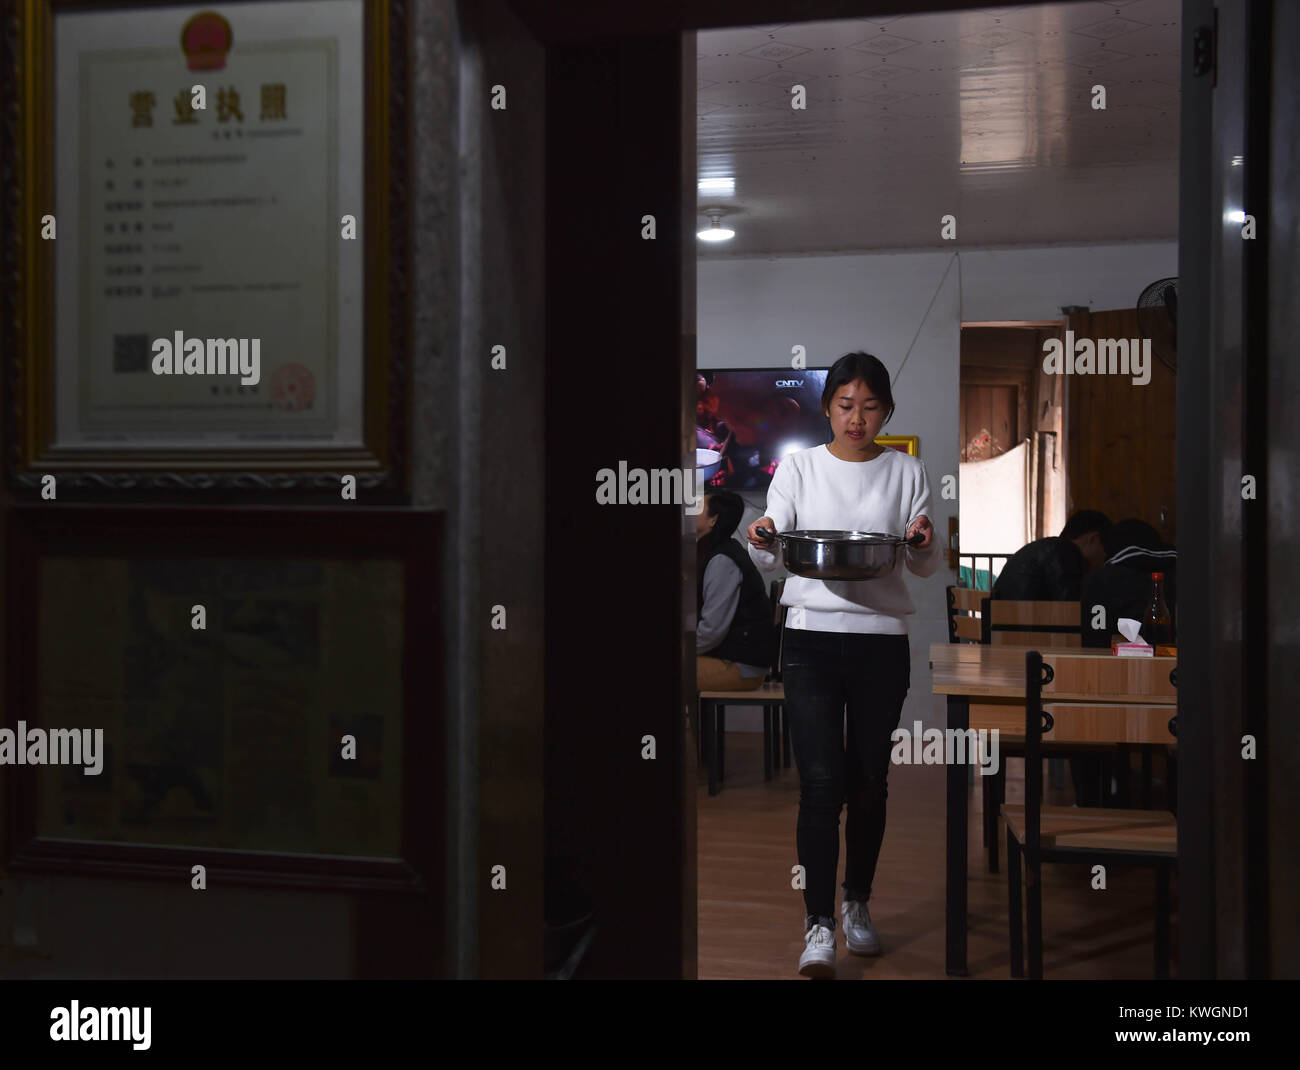 (180104) - Nan'an, Januar 4, 2018 (Xinhua) - Guo Weilan arbeitet an der Noodle Shop in Pendao Dorf Penghua Township in Wujiang City, im Südosten der chinesischen Provinz Fujian, Jan. 3, 2018. Um dafür zu sorgen, der Eltern, der 23-jährige Guo Weilan nach Hause kam und Nudeln verkaufen nach dem Studium von der Hochschule. Der Noodle Shop, der hat eine Geschichte von 100 Jahren, gehört zu ihren Eltern. Guo ist die vierte Generation der Noodle Shop zu betreiben. Neben dem Verkauf von Nudeln im Shop verkauft sie auch auf das Internet zusammen mit Produkten anderer Dorfbewohner. (Xinhua/Song Weiwei) (Dhf) Stockfoto